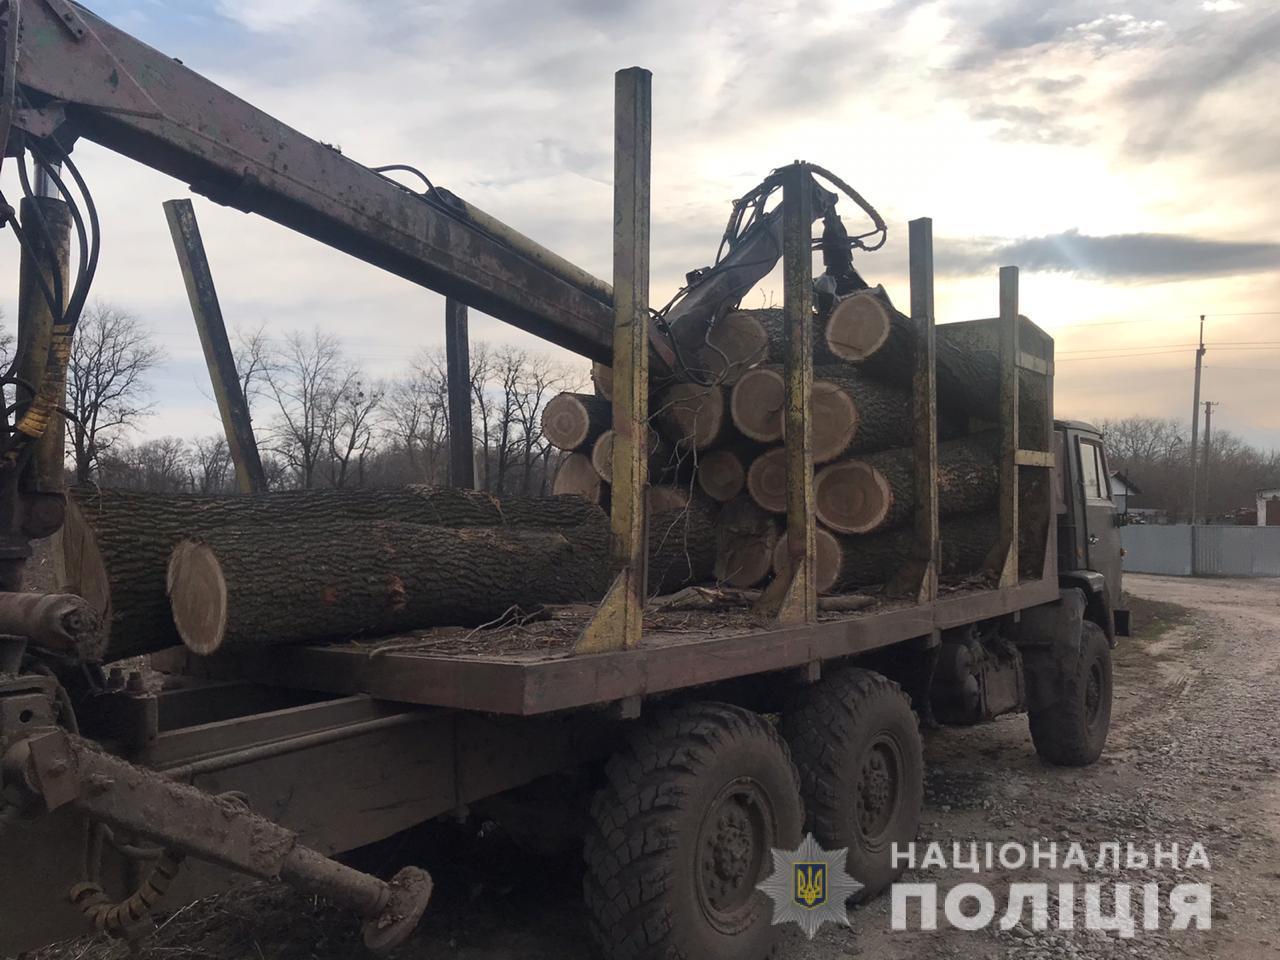 Полиция в Переяслав-Хмельницком районе задержали грузовик с незаконно спиленной древесиной (фото)